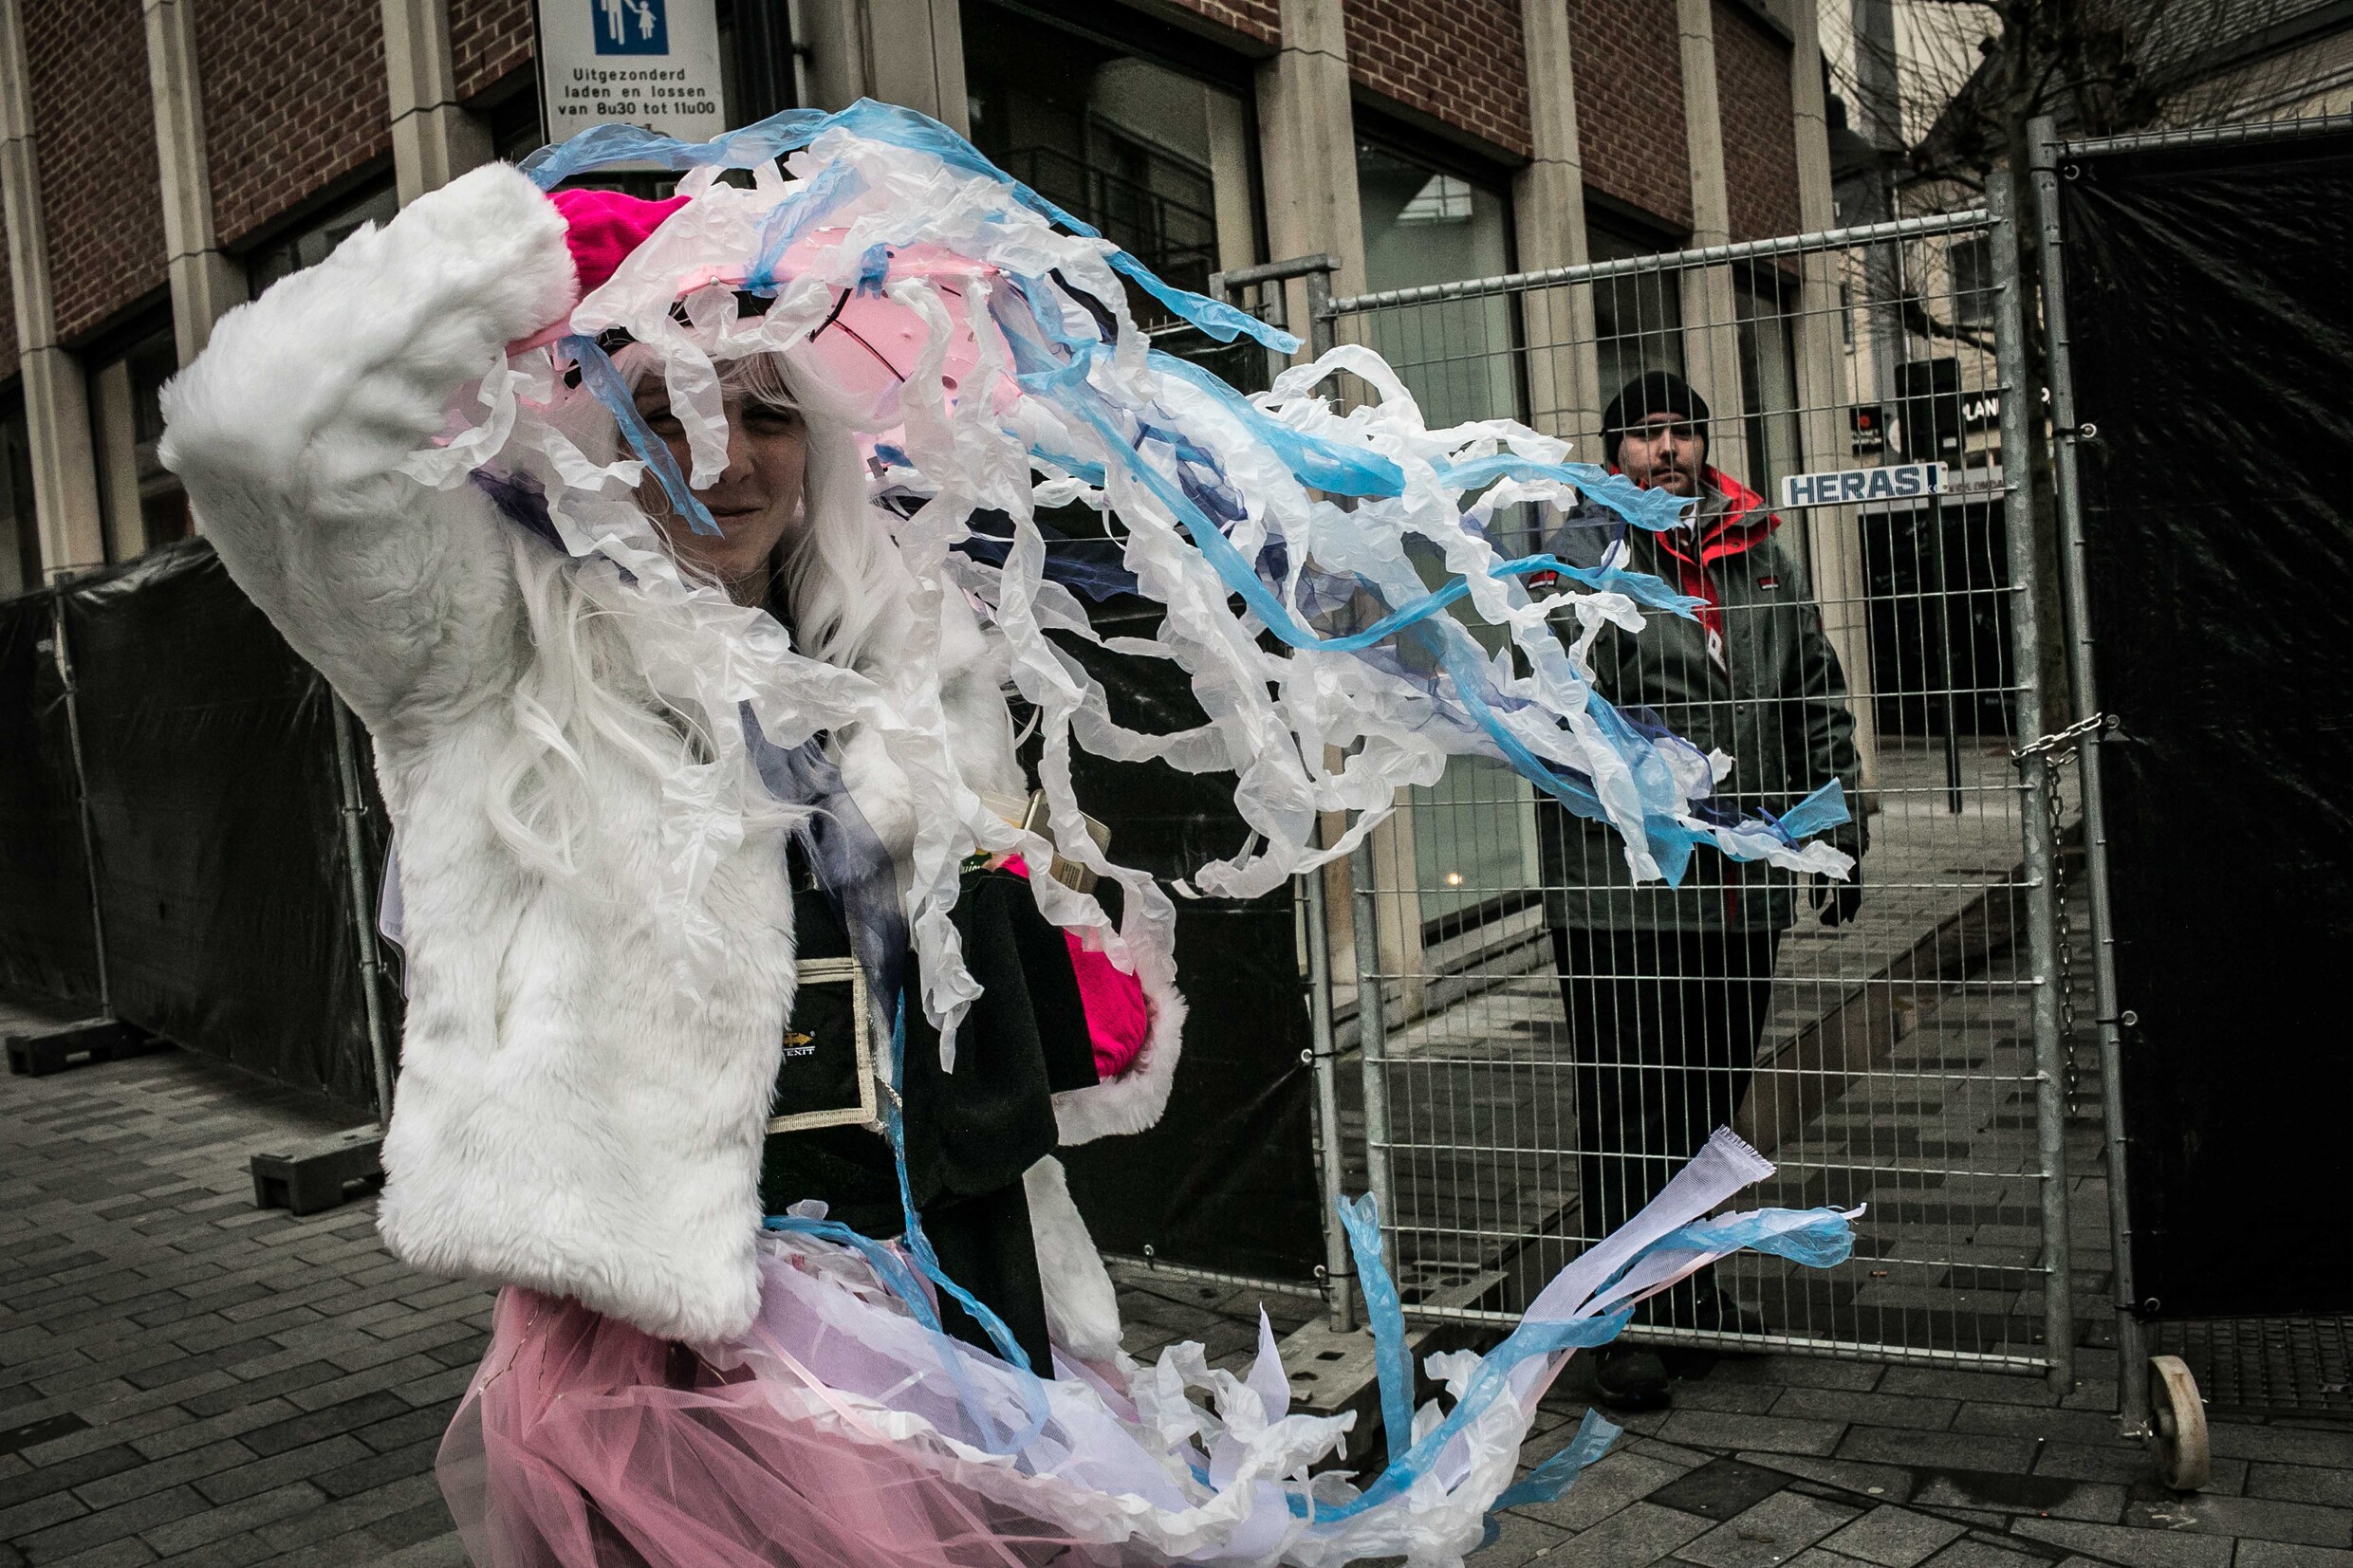 In beeld: De Morgen-fotograaf Bas Bogaerts legt Aalst Carnaval vast